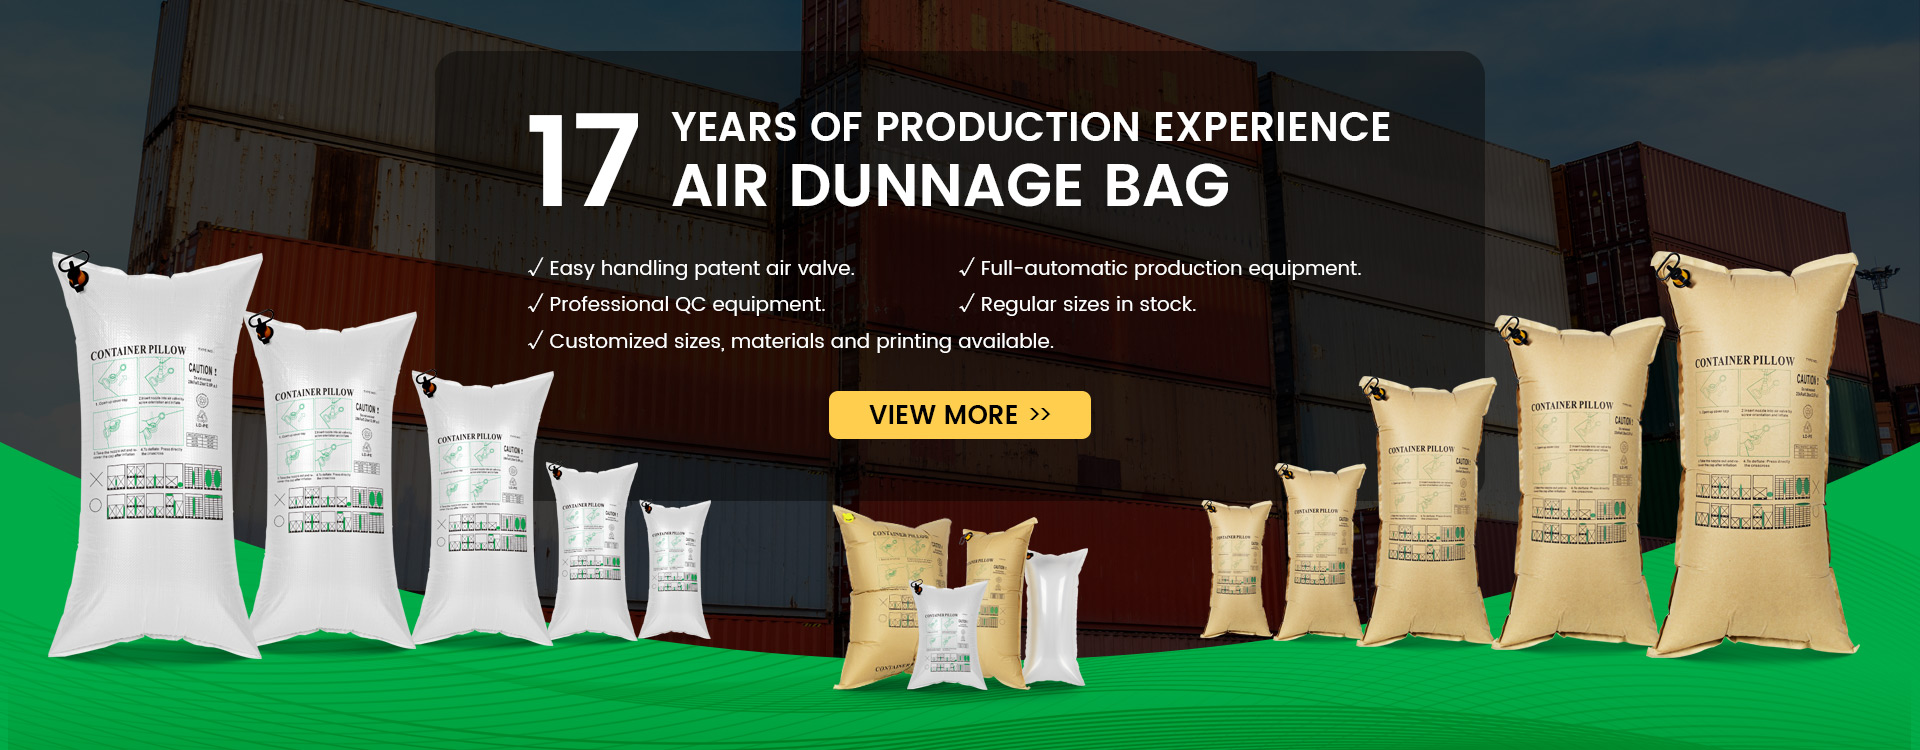 air dunnage bag